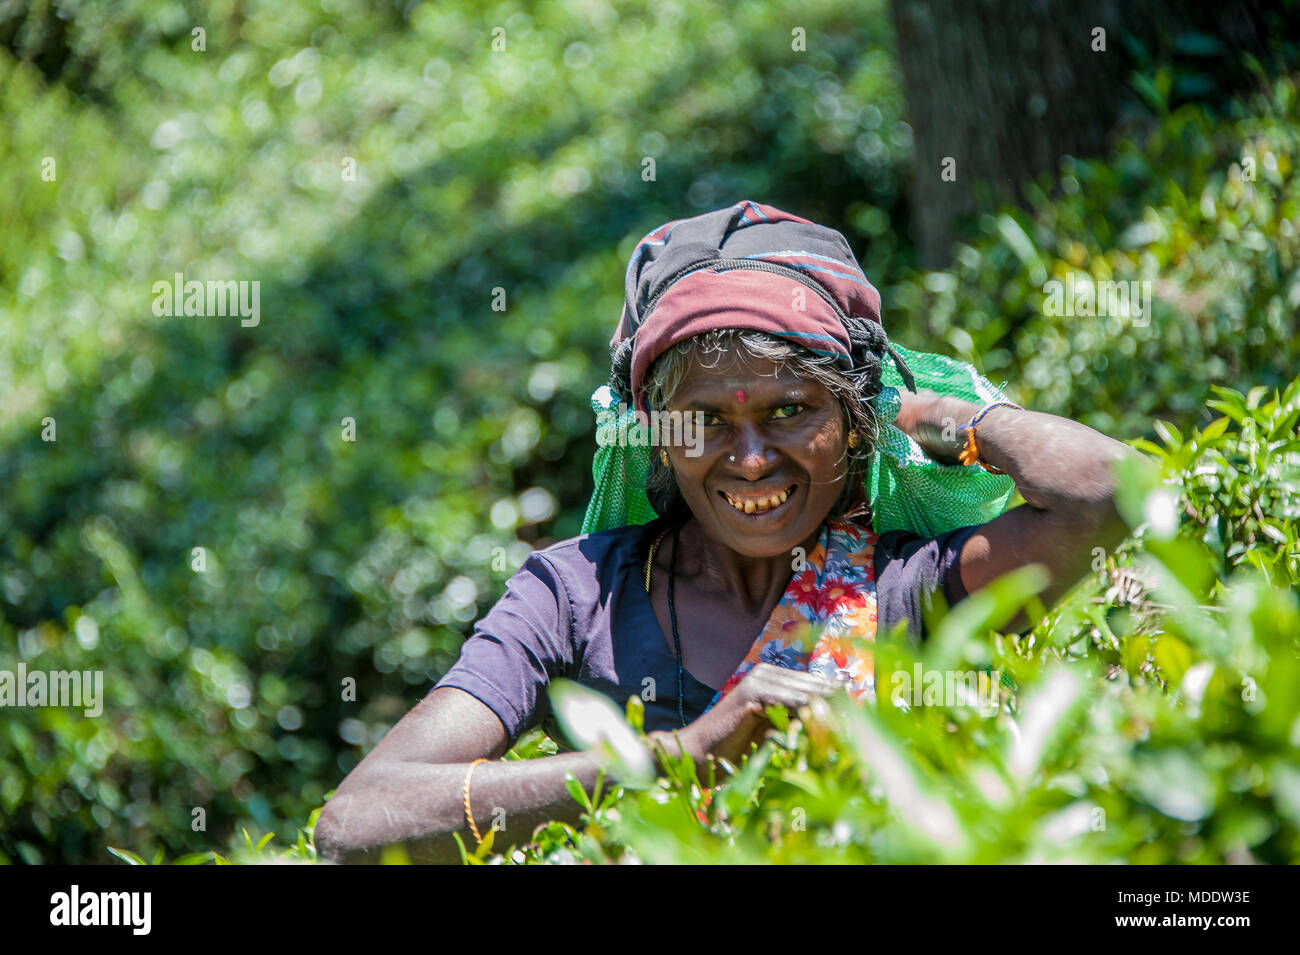 Plateau féminin picker la récolte des cultures de plantation sur une colline. Souriant, heureux face à l'encontre d'une femme floue, fond vert Banque D'Images